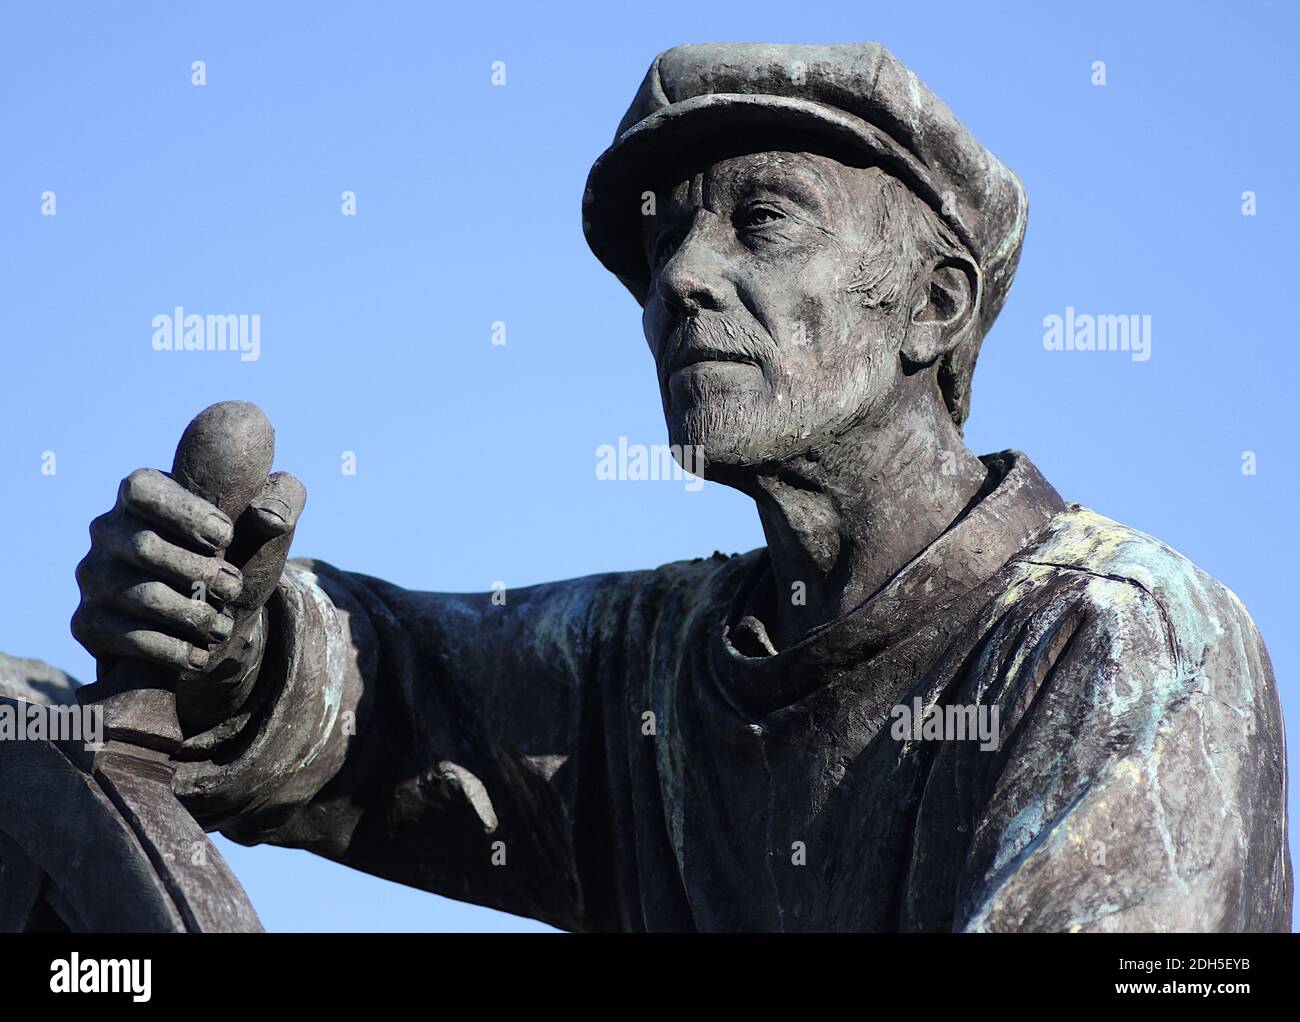 Brixham, Devon, Angleterre : gros plan de la figure dans la statue publique « Man and Boy » ; la statue rend hommage aux chalutiers et à l'industrie de la pêche de Brixham Banque D'Images